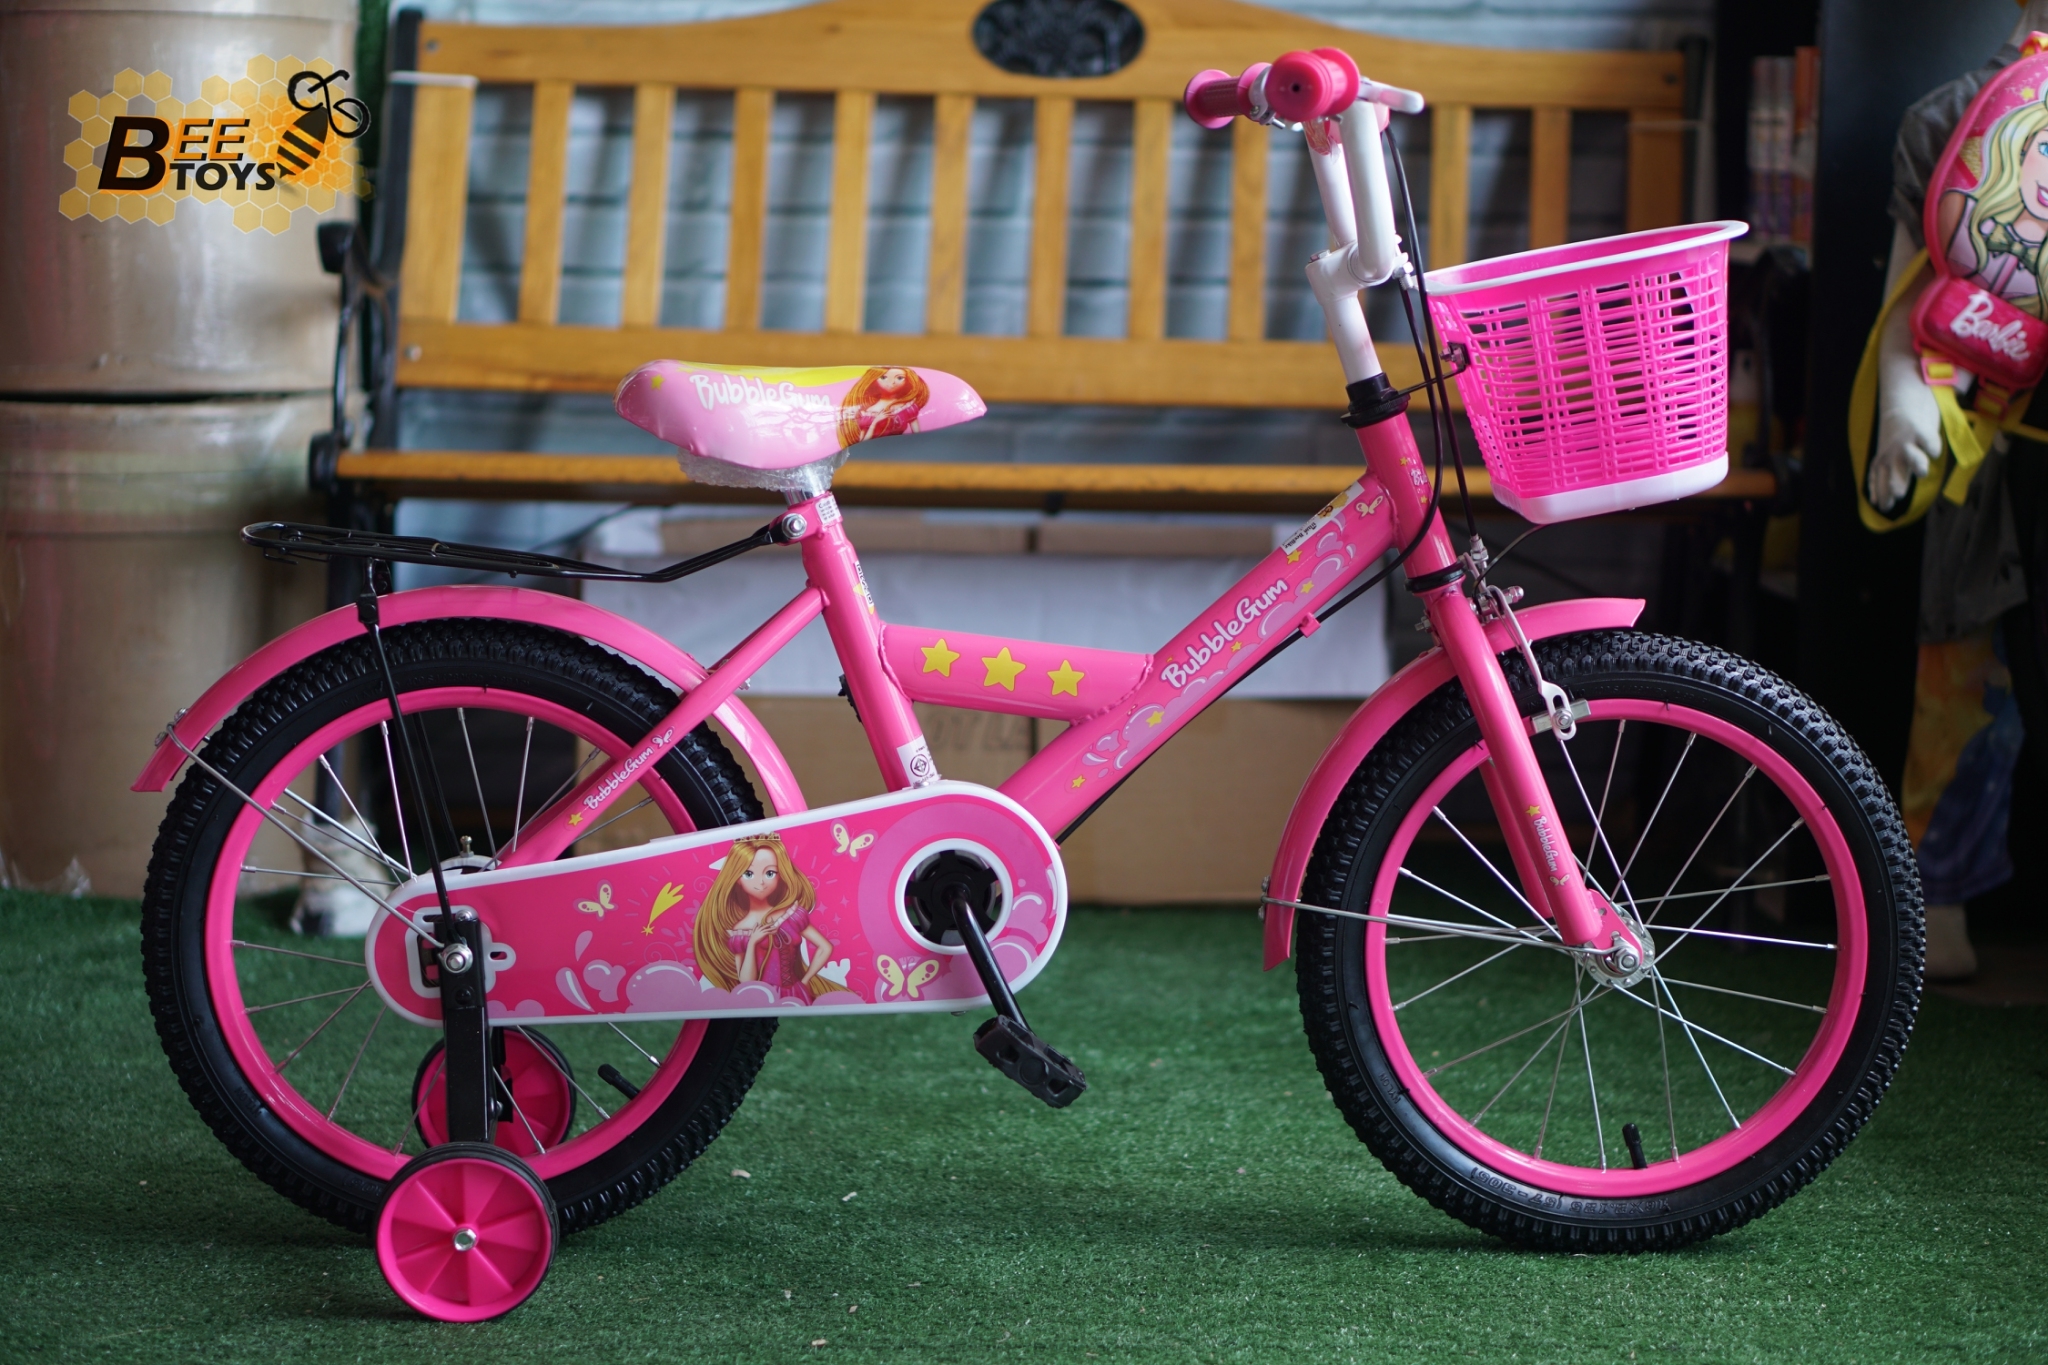 จักรยาน 16 นิ้ว Nano รุ่น Bubble Gum ลายเจ้าหญิง น่ารัก สำหรับ เด็ก 4-7 ขวบ คุณภาพดี ราคาถูก beetoy เก็บเงินปลายทางได้